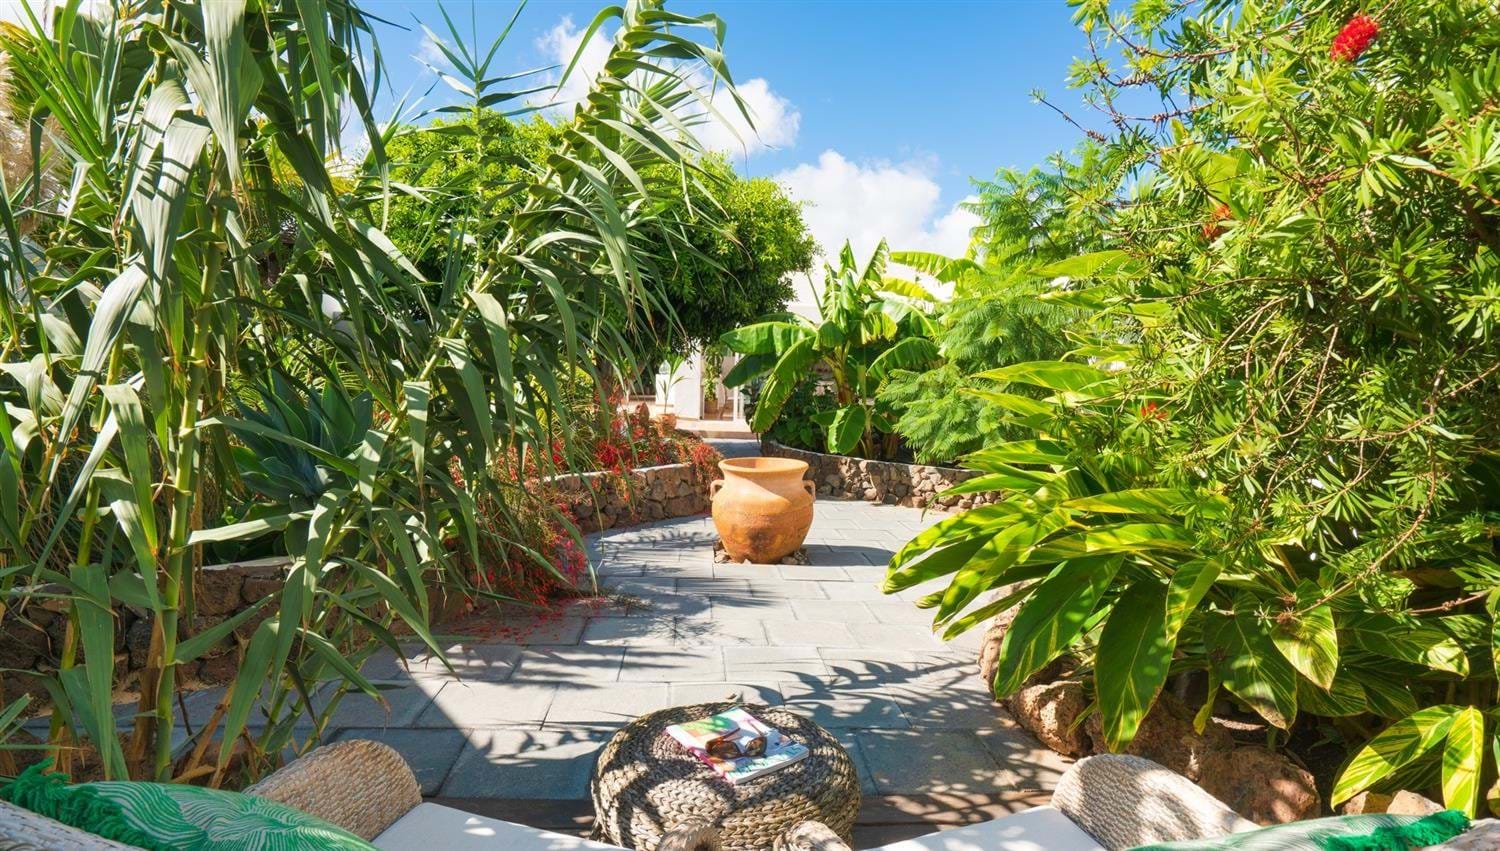 Vistas de los platanos y las palmeras, Villa Jardin Secreto a Finca Botanico, Lanzarote